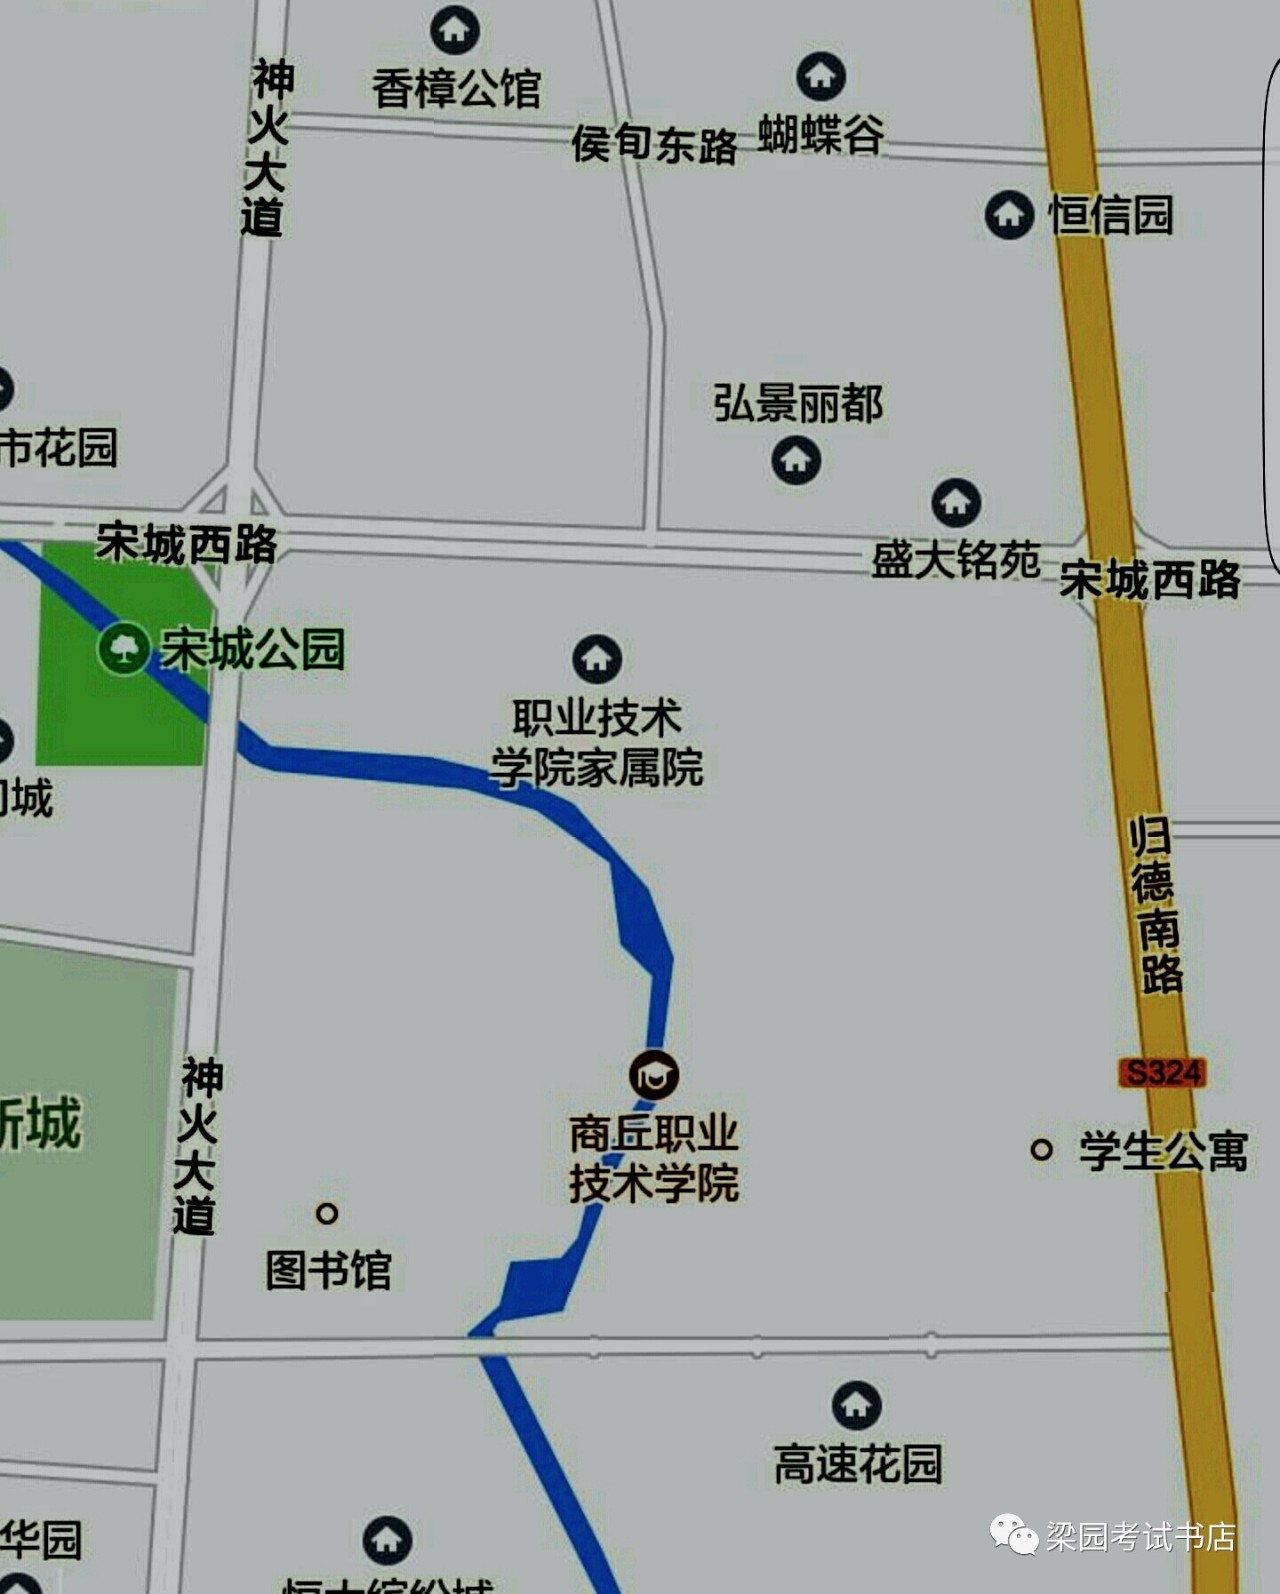 考试地点:商丘工学院(长江路与睢阳大道路交叉口东200米)